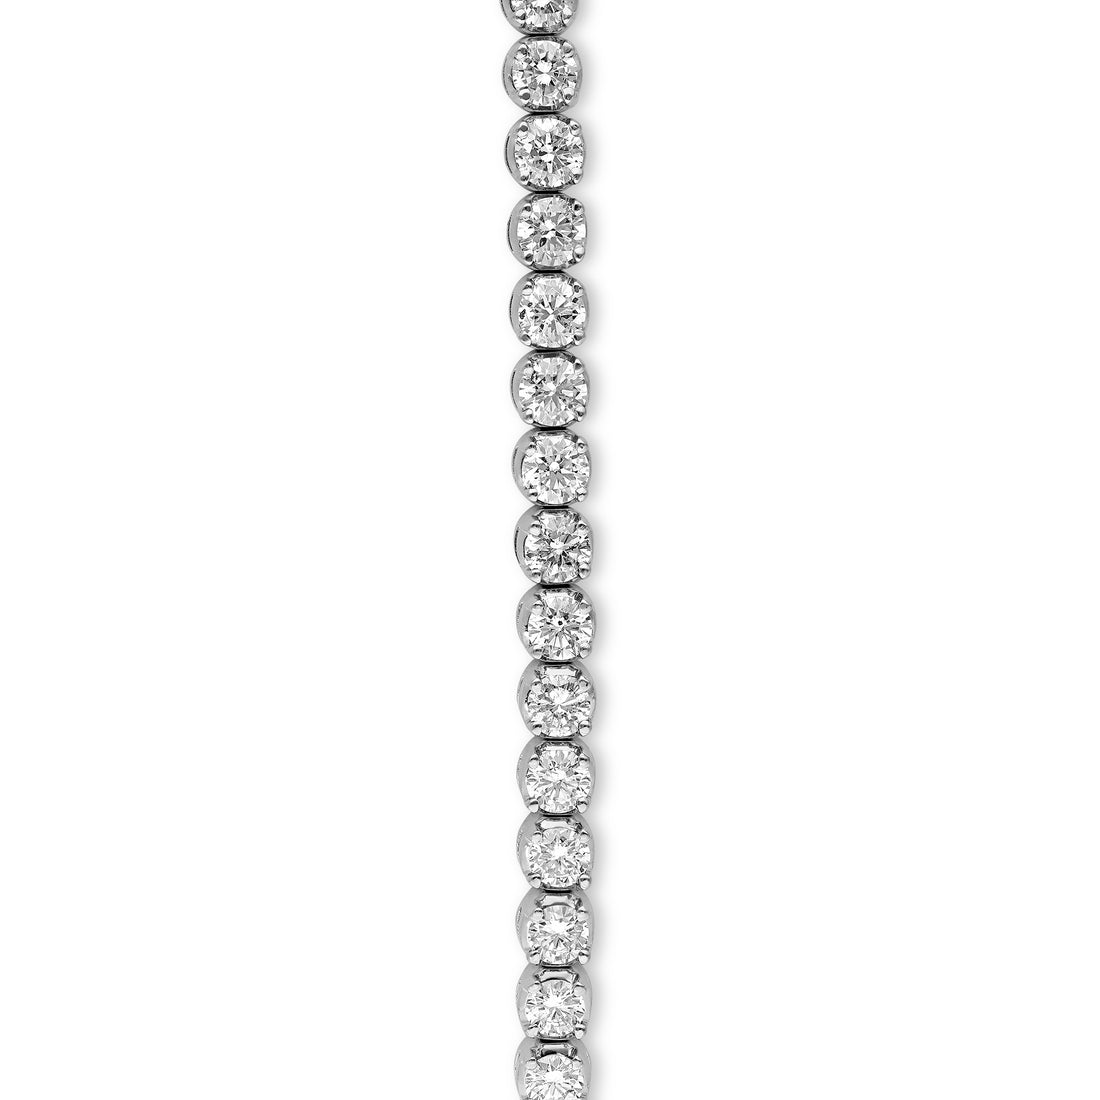 White Gold Round Diamond Tennis Bracelet - 8.4 Carat